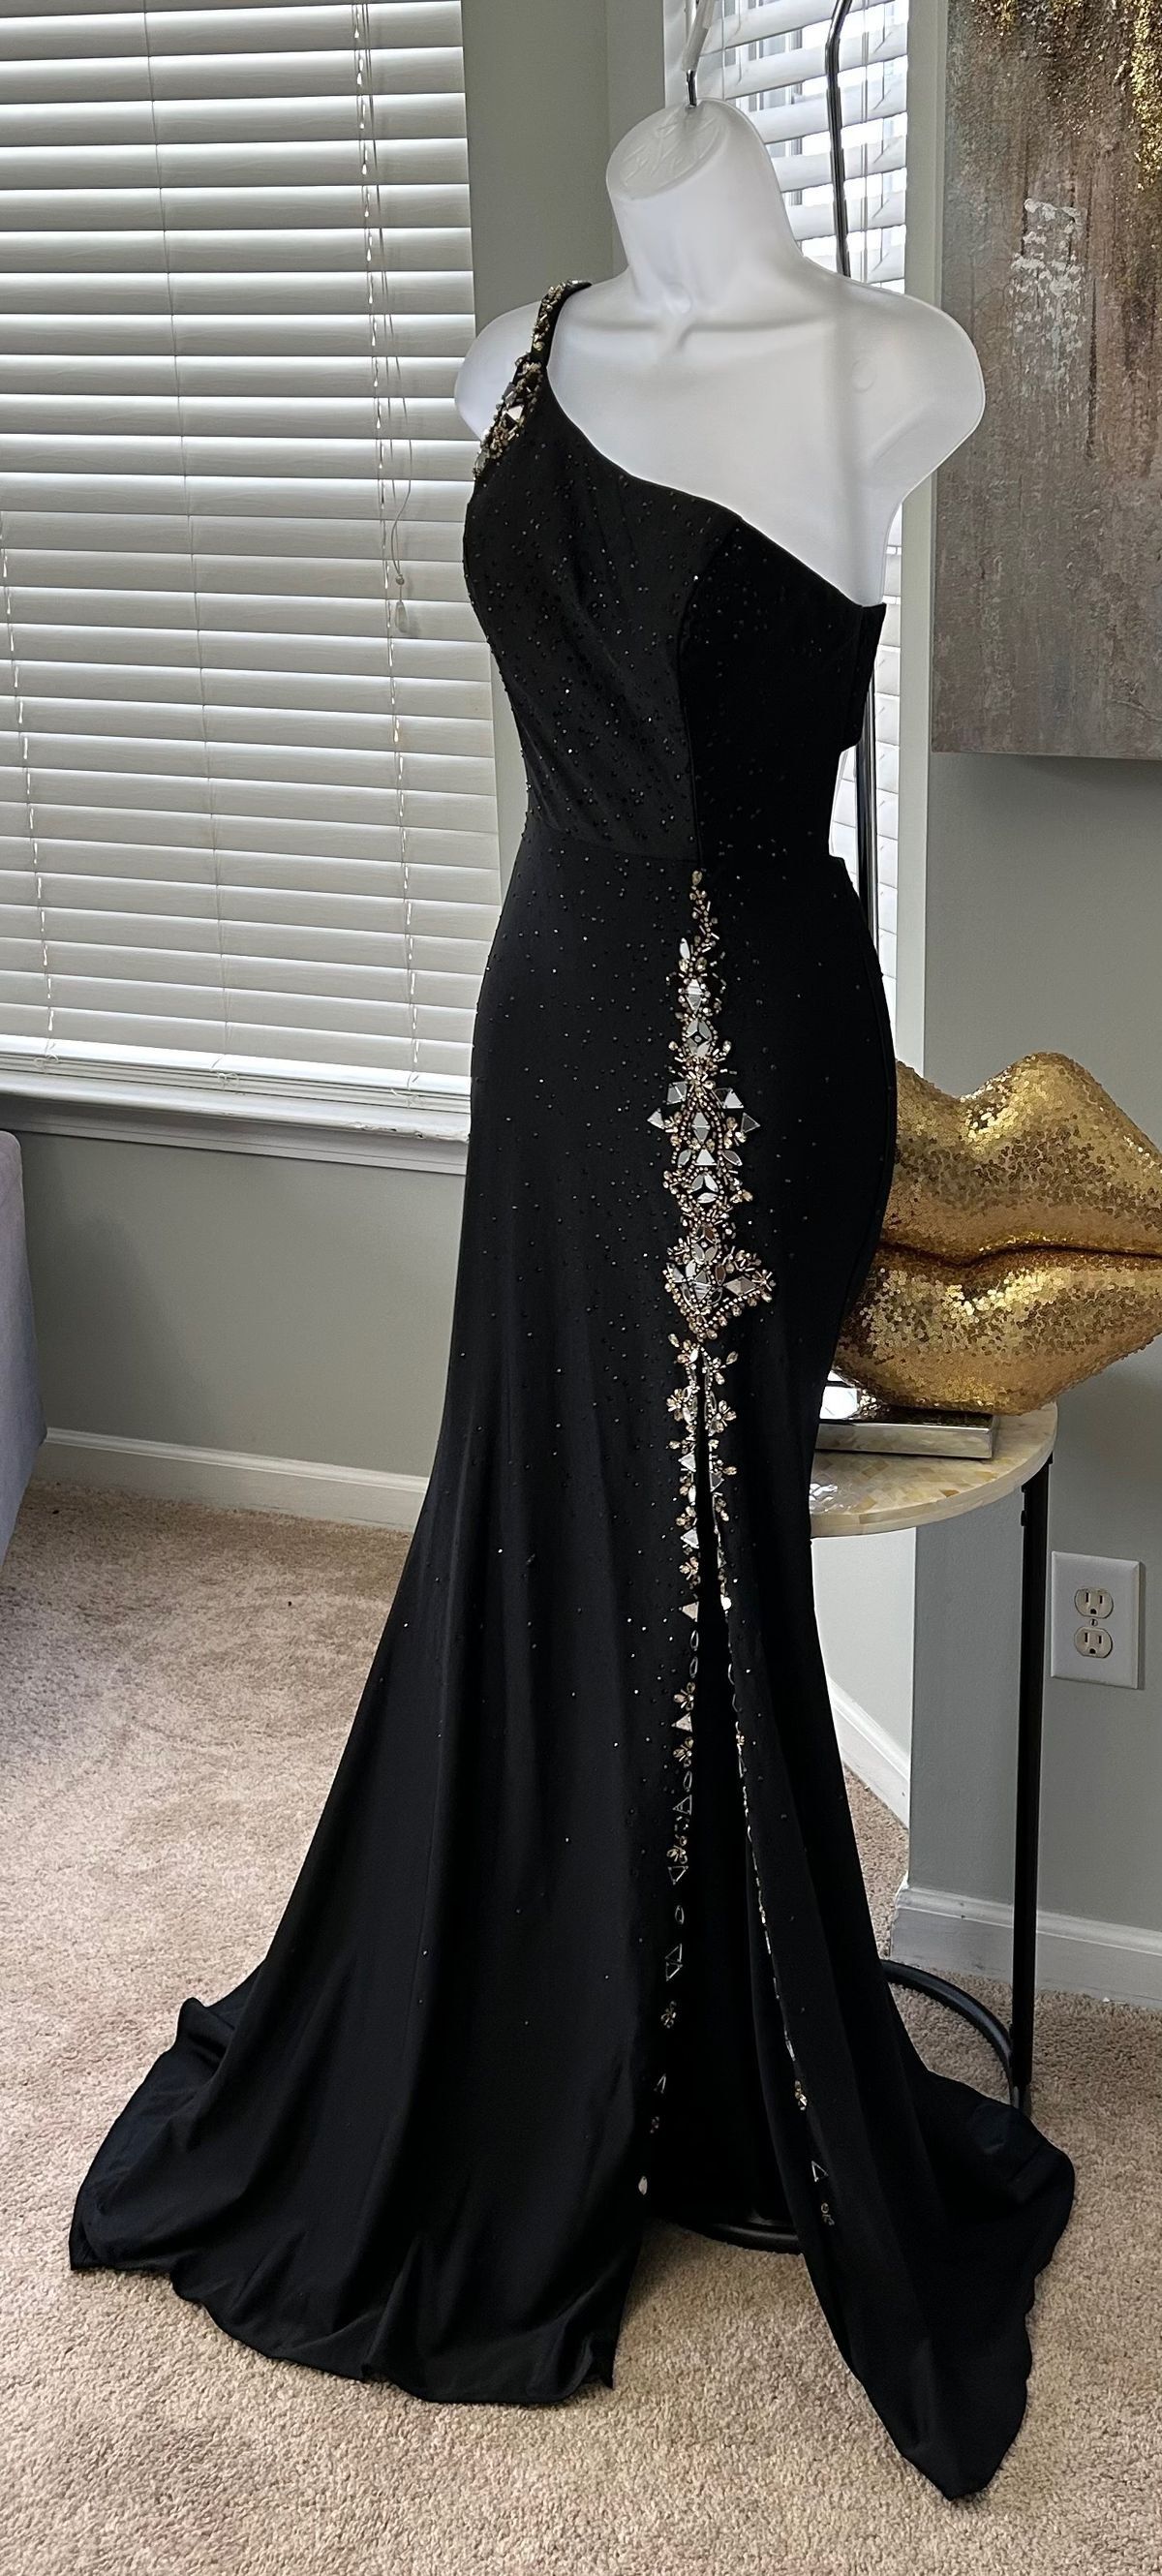 Style 20059 Amarra Size 2 Prom One Shoulder Black Side Slit Dress on Queenly